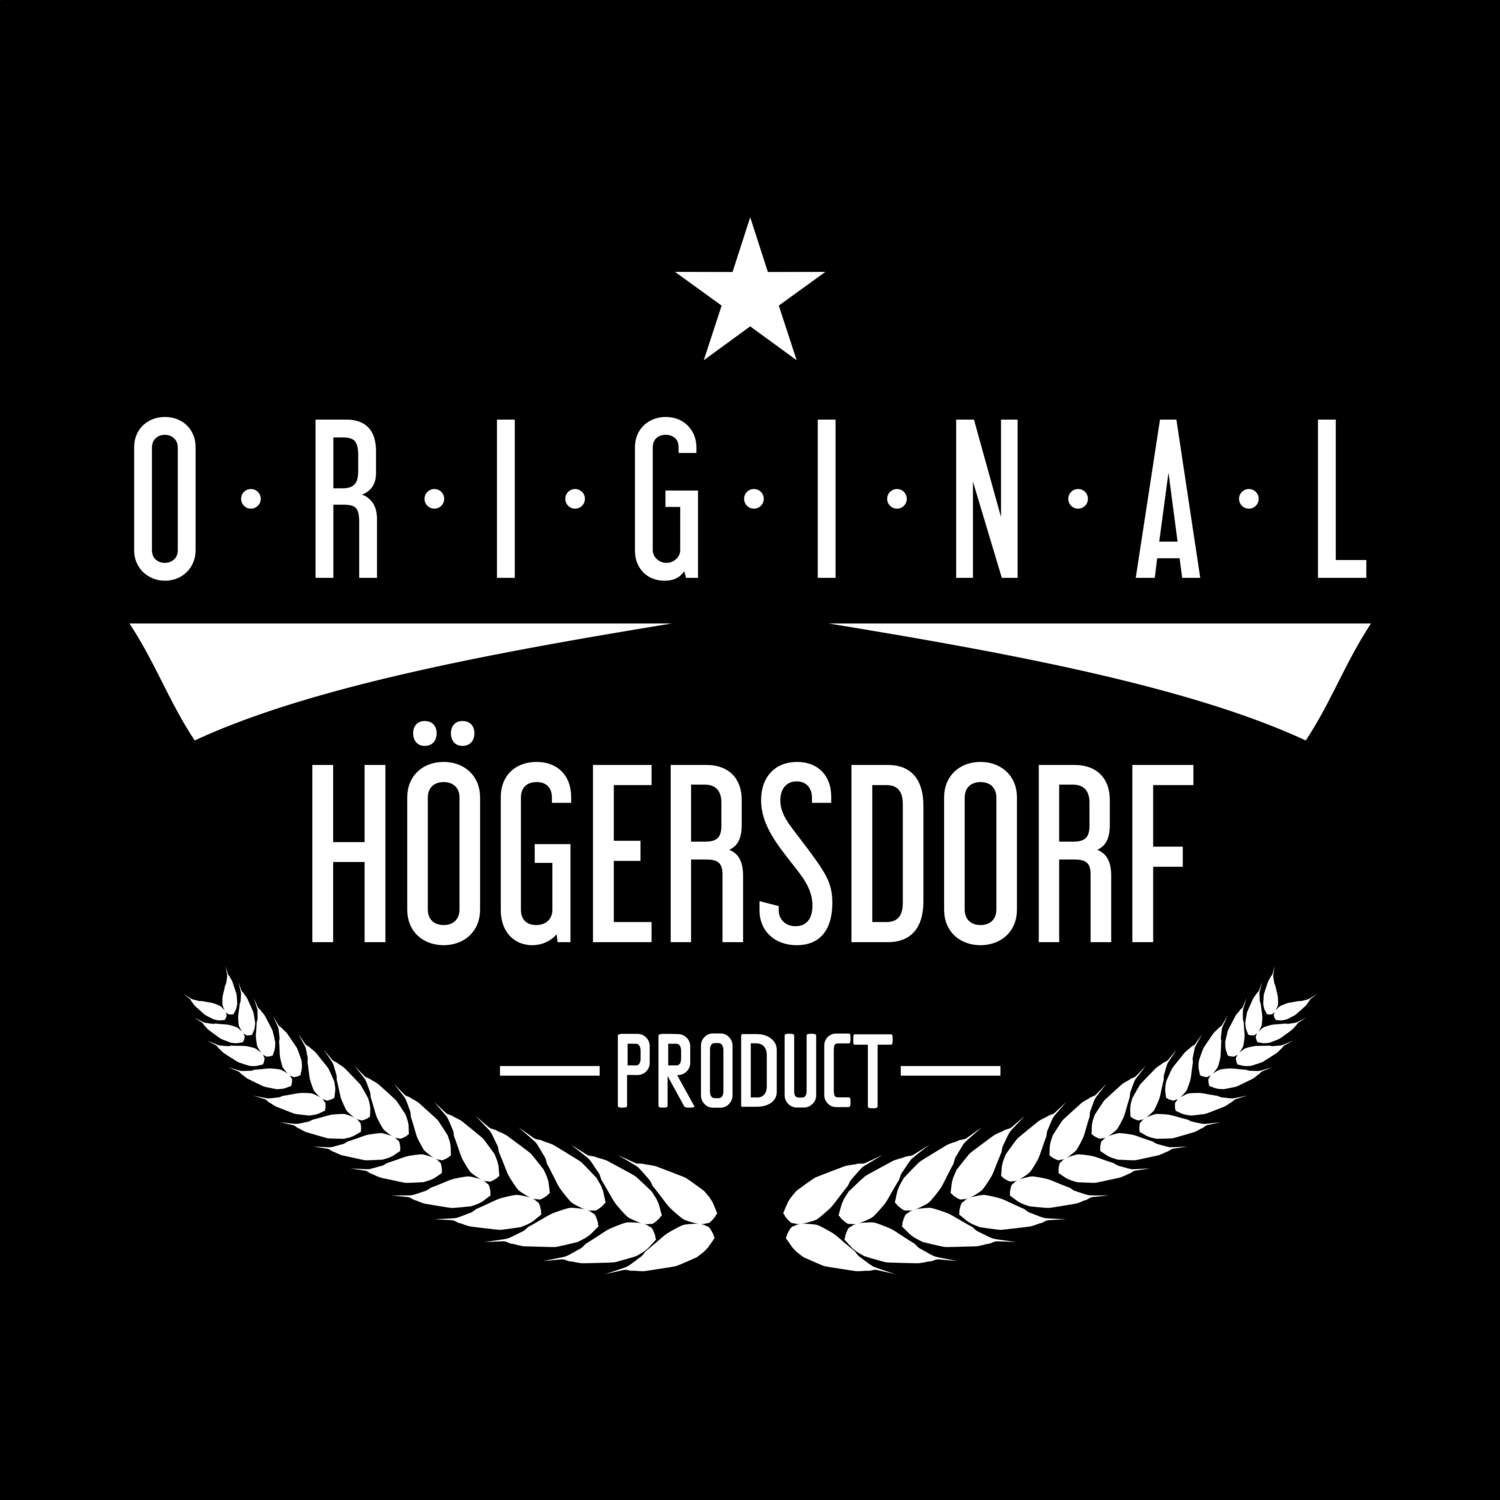 Högersdorf T-Shirt »Original Product«